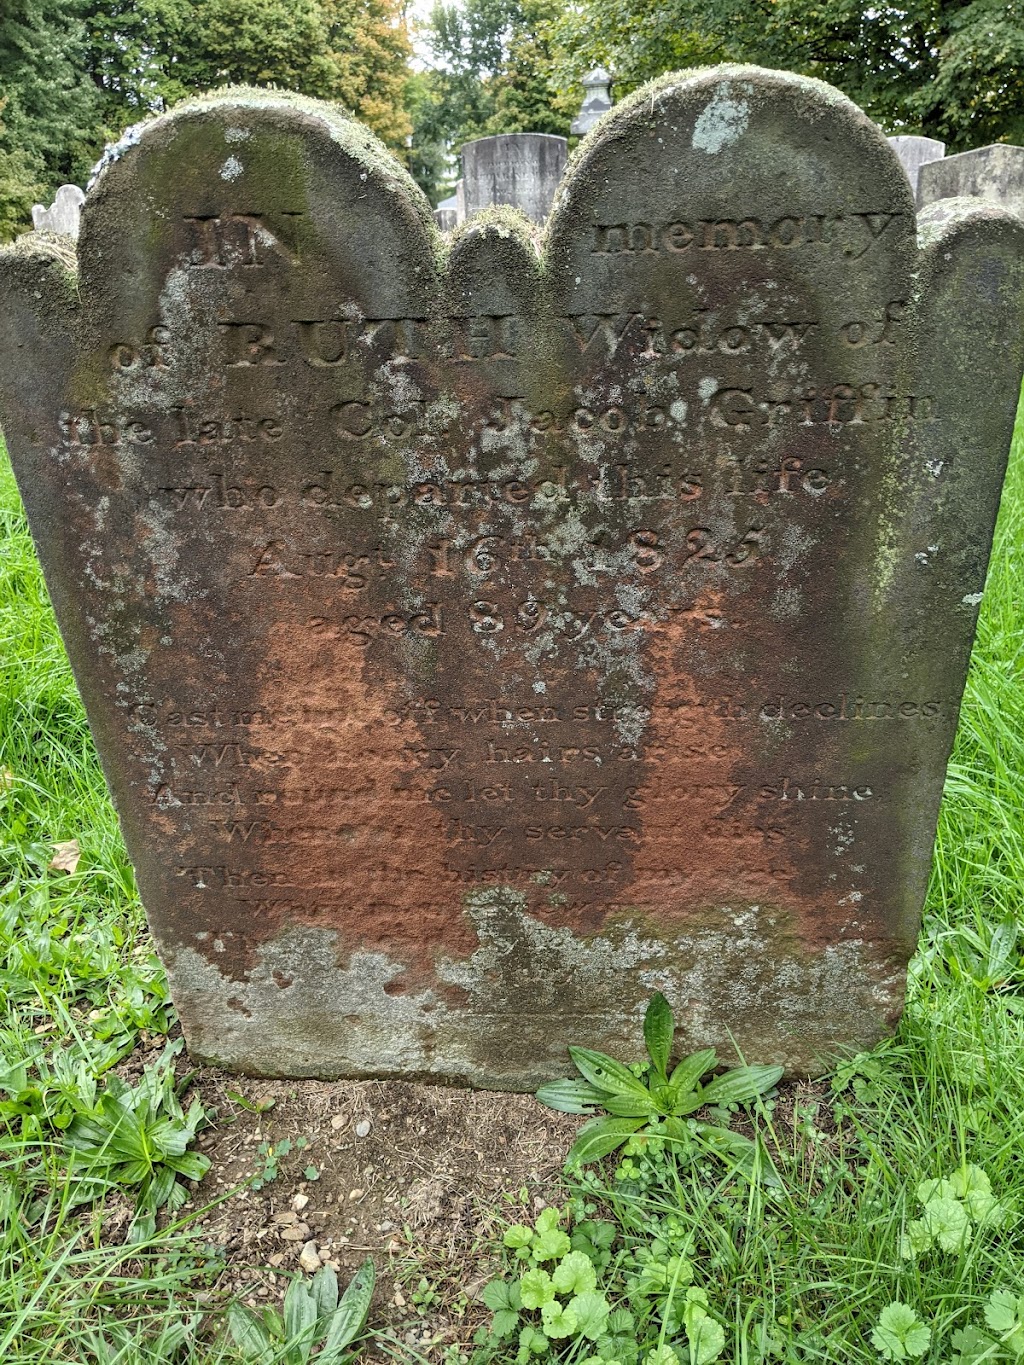 Rombout Rural Cemetery | 1571 NY-52, Fishkill, NY 12524 | Phone: (845) 393-4793